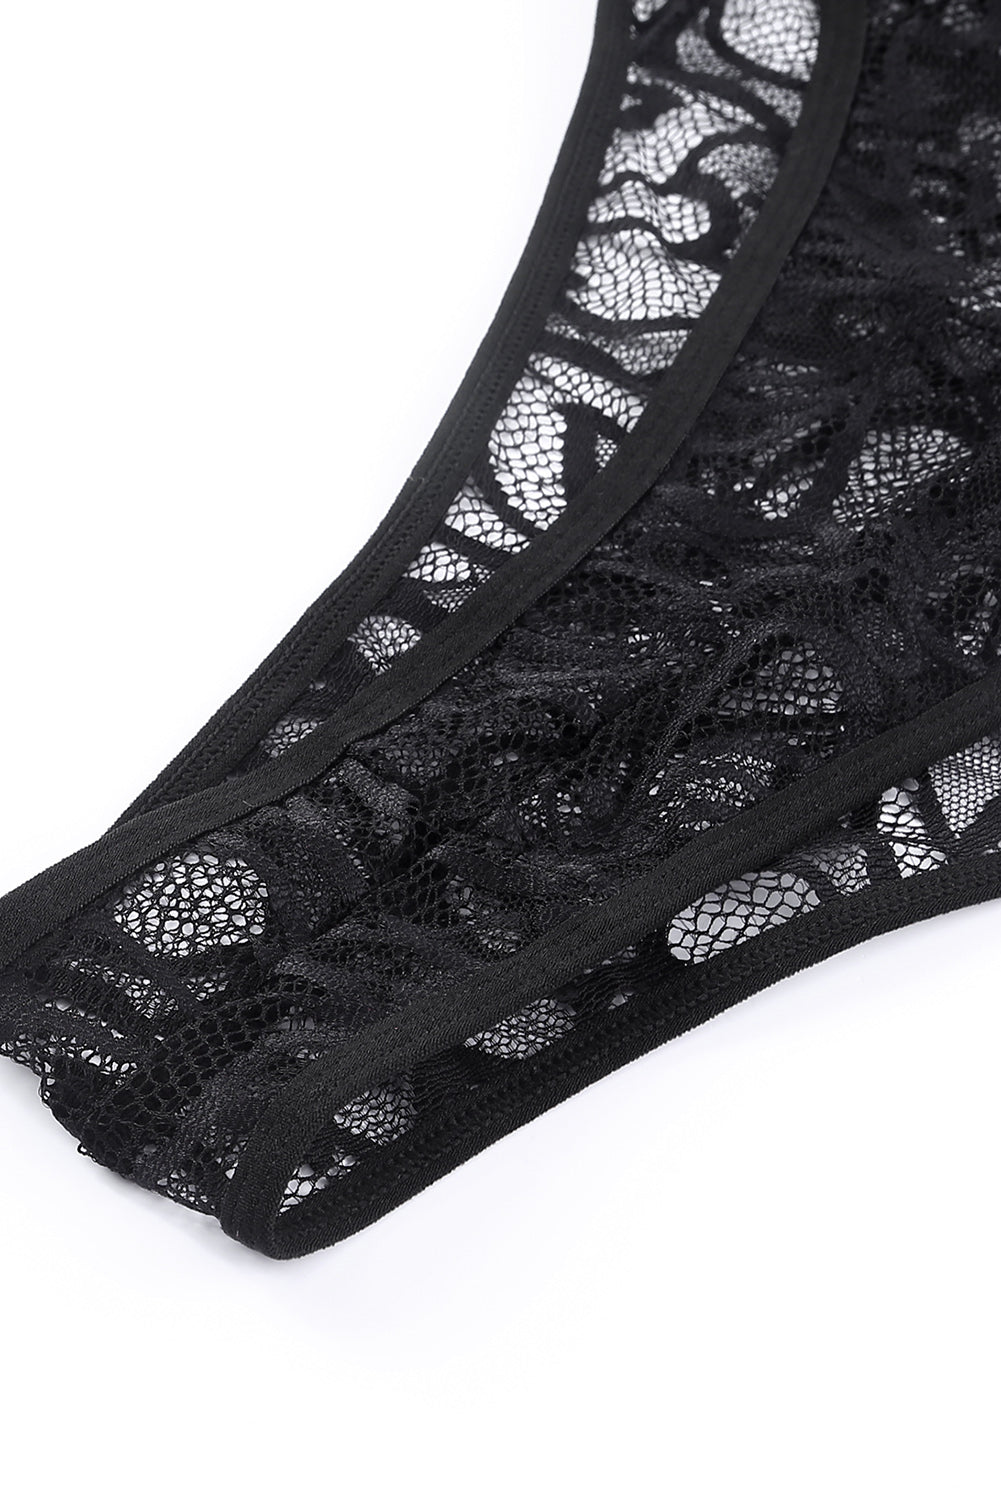 Black Crossed Straps Sheer Lace Teddy with Garter Belt Teddy Lingerie JT's Designer Fashion